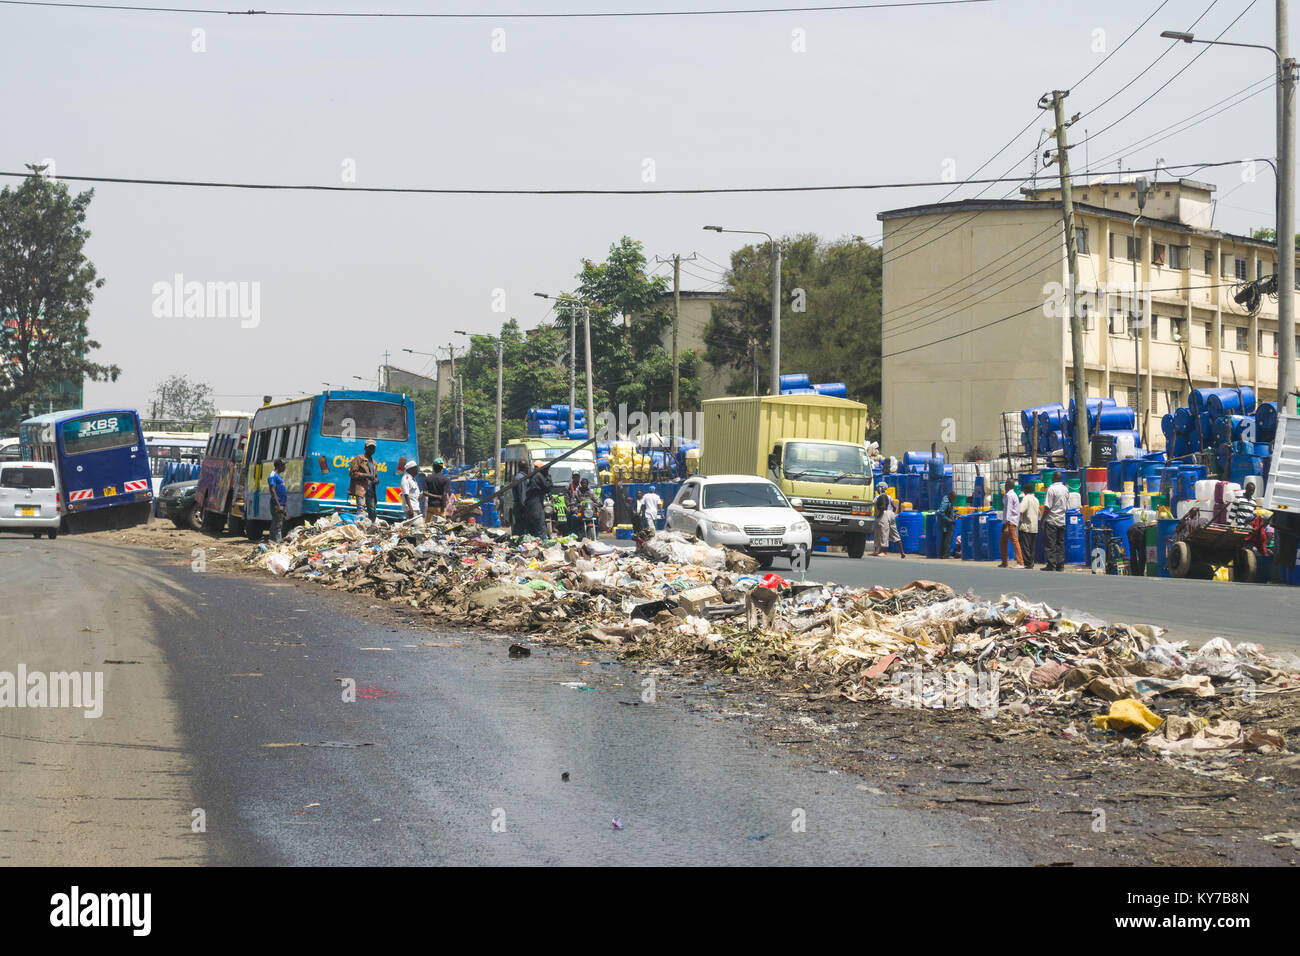 Un gros tas de déchets en plastique et autres déchets est assis au milieu de la route en tant que personnes et véhicules aller passé, Nairobi, Kenya, Afrique de l'Est Banque D'Images